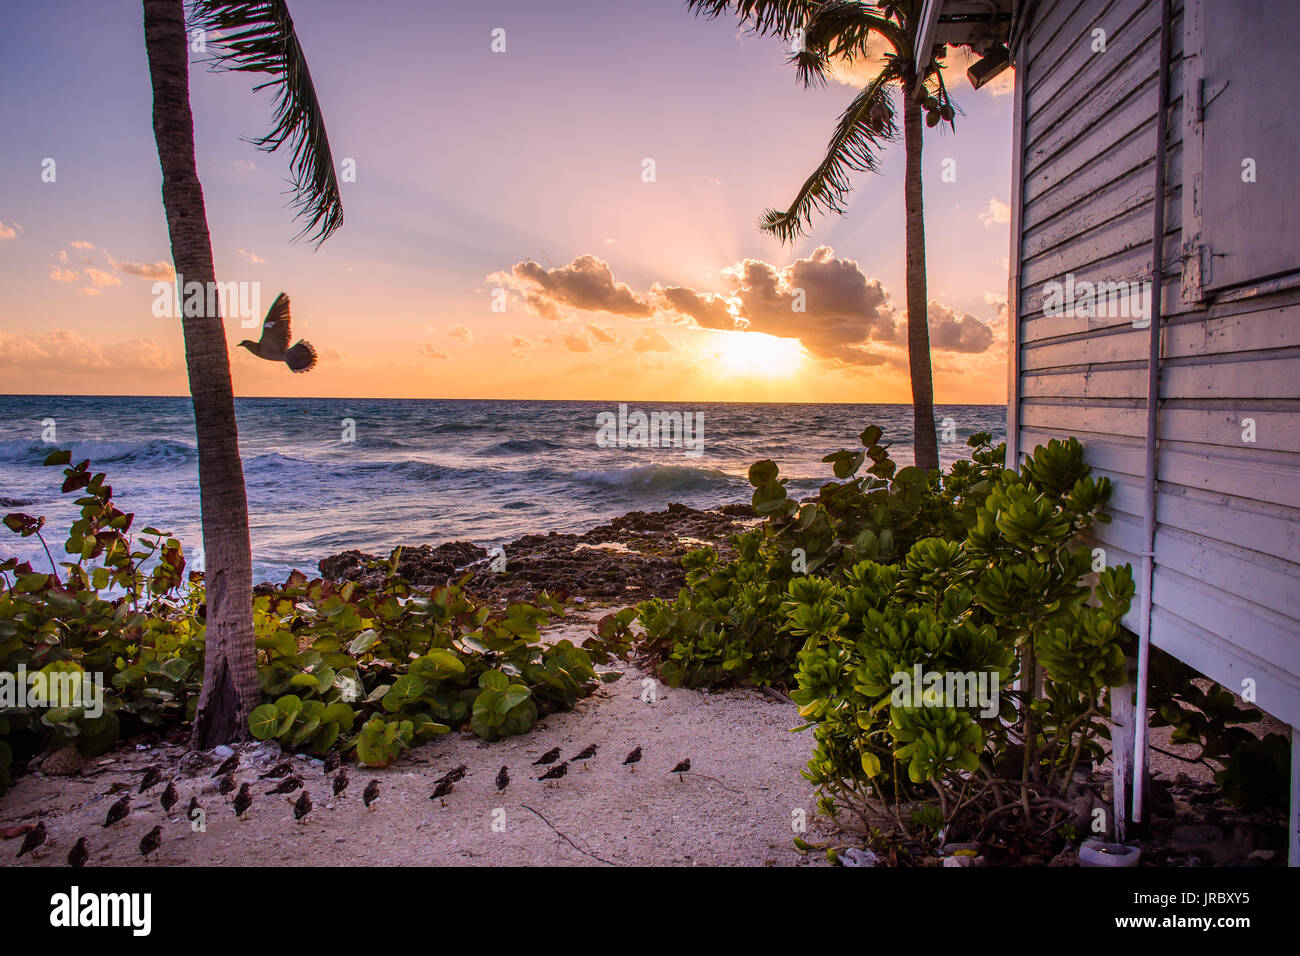 Vögel in einem wunderschönen Sonnenuntergang auf den Cayman Islands erfasst. Stockfoto